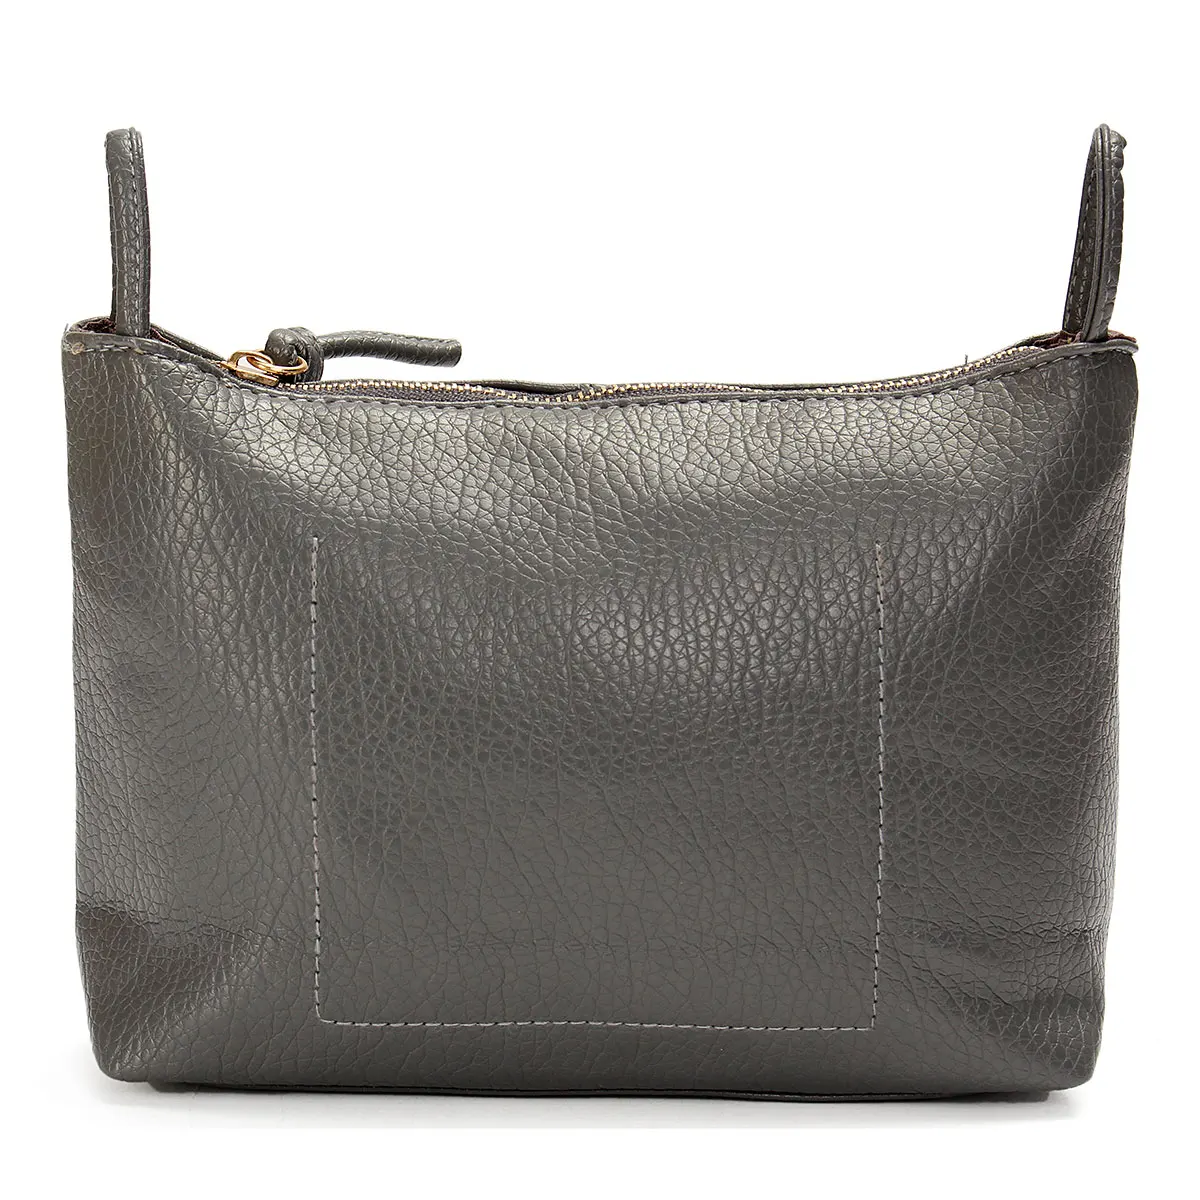 Aequeen мини-сумка новая модная сумка на плечо для телефона с монеткой Маленькая женская сумка-мессенджер из искусственной кожи Одноцветный клатч на молнии через плечо - Цвет: Серый